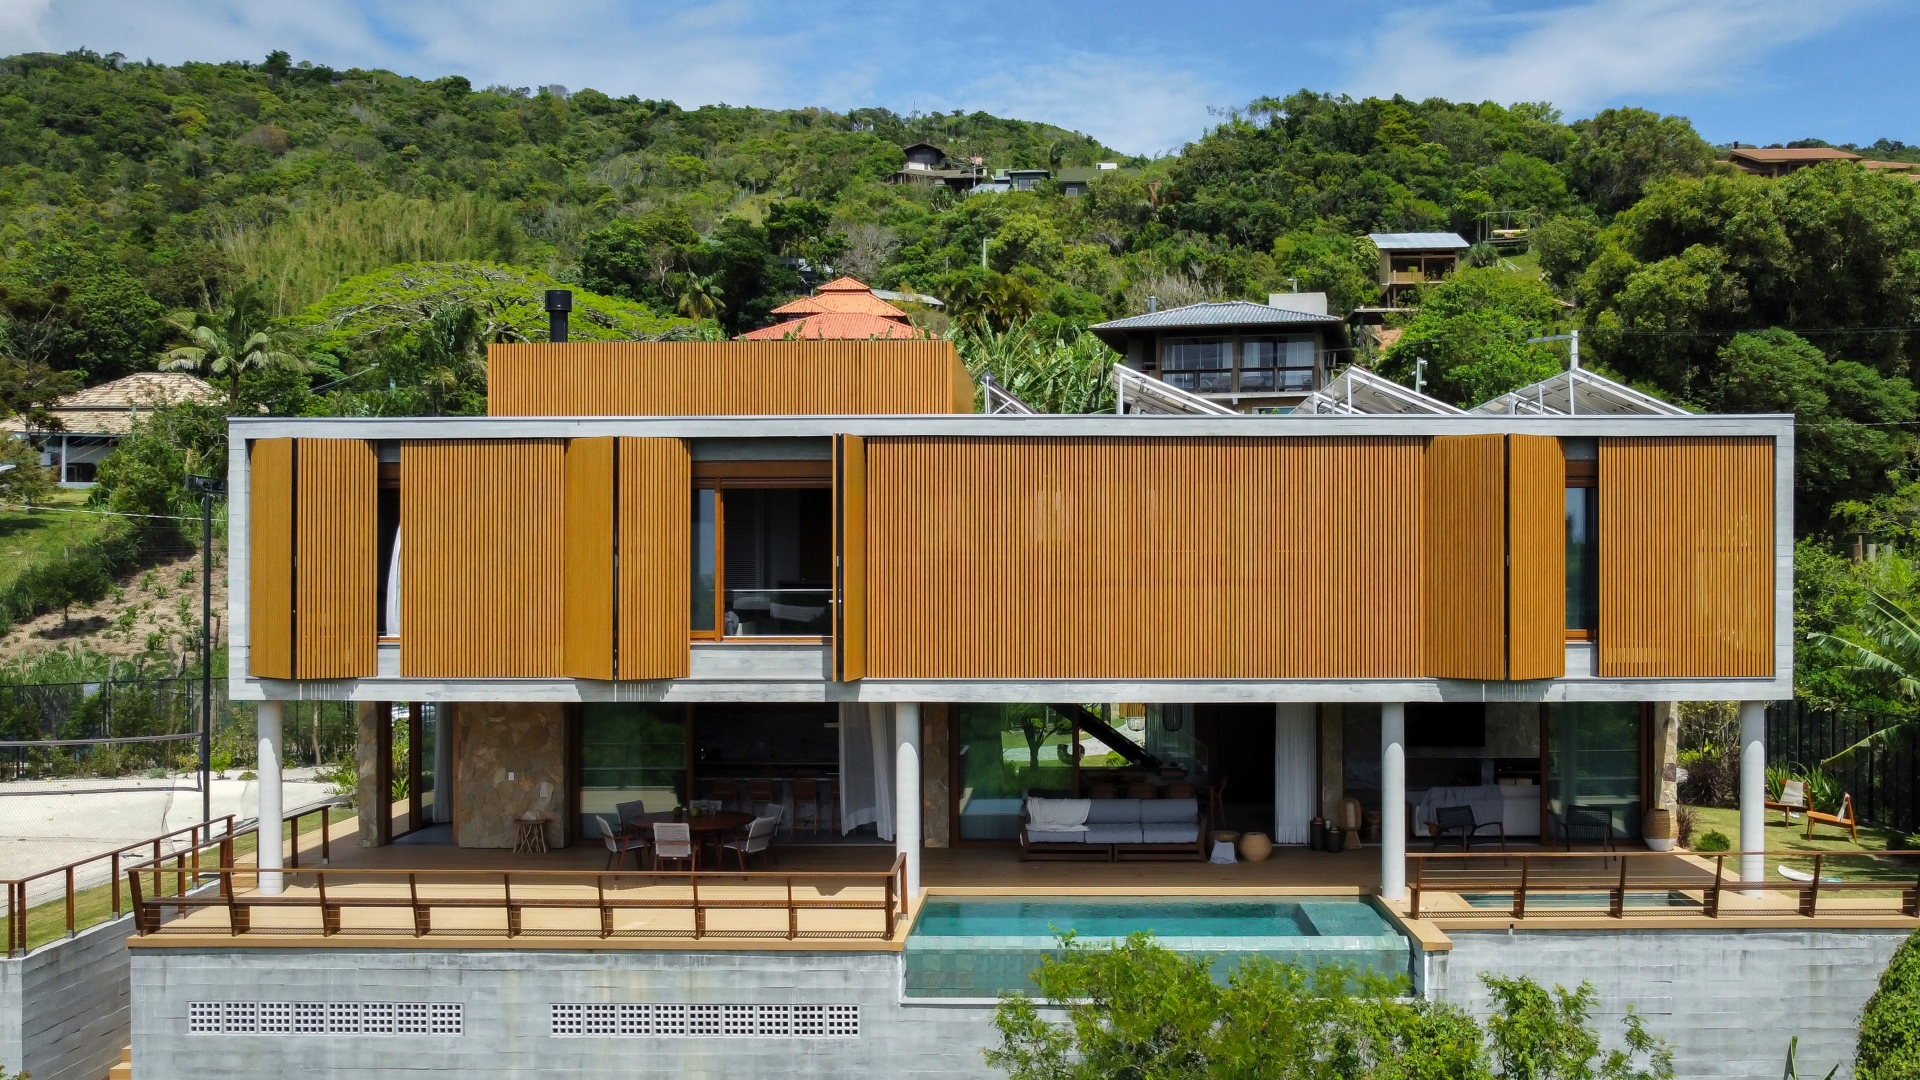 Casa de praia com fachada em madeira, dois pavimentos, piscina e área de varanda no pilotis, no telhado placas de energia solar e vegetação densa ao fundo